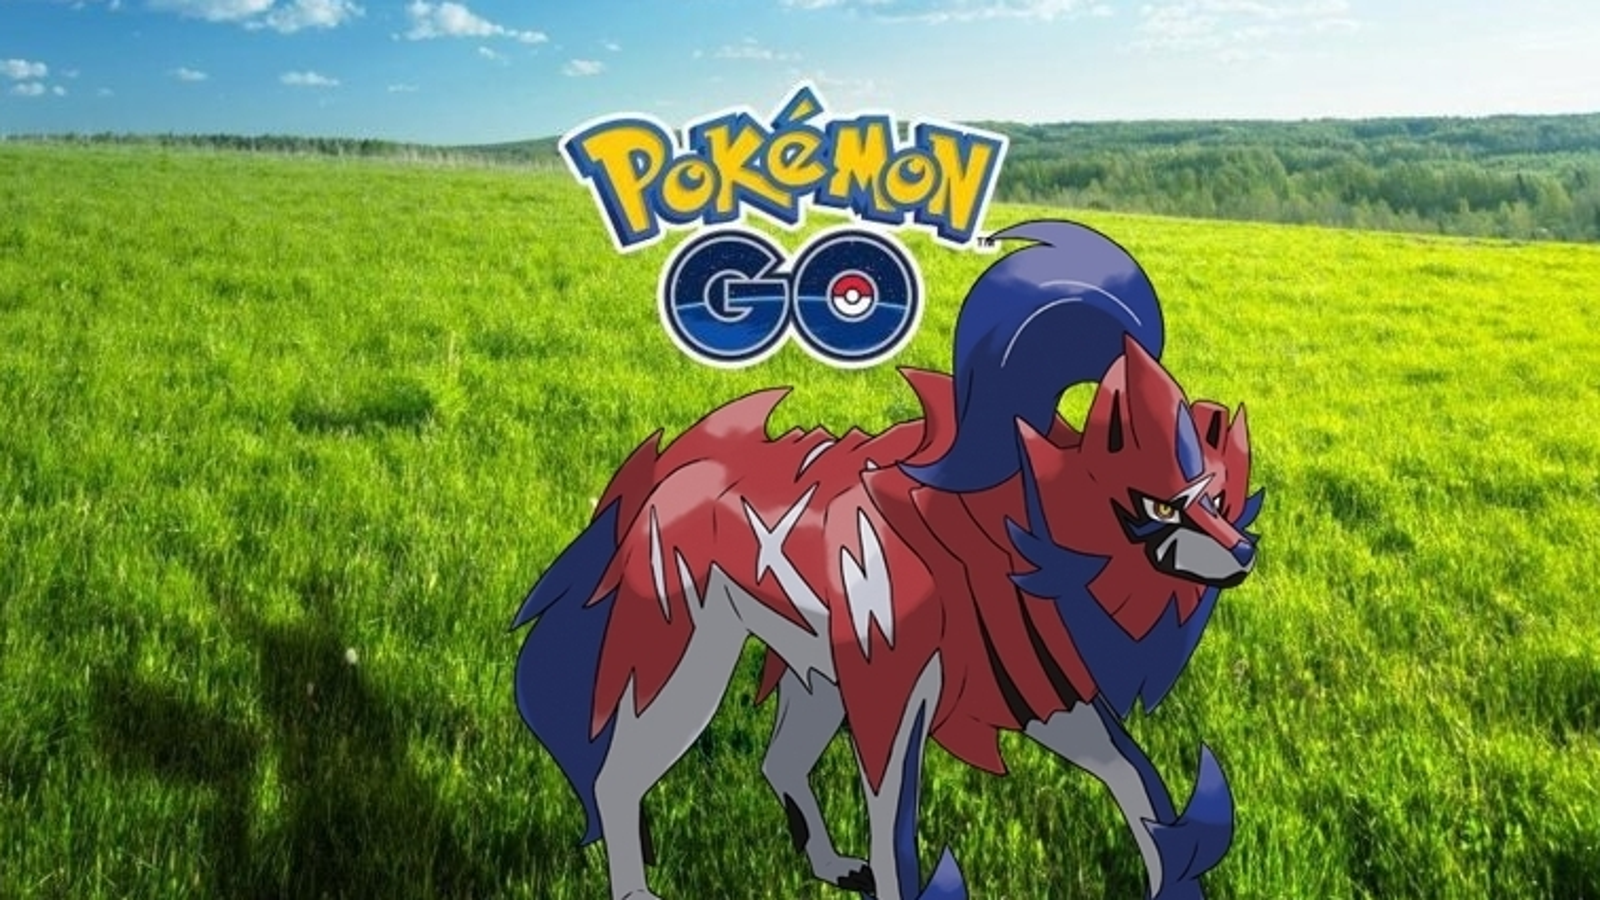 Pokémon Go - Raid de Zamazenta - counters, fraquezas e ataques